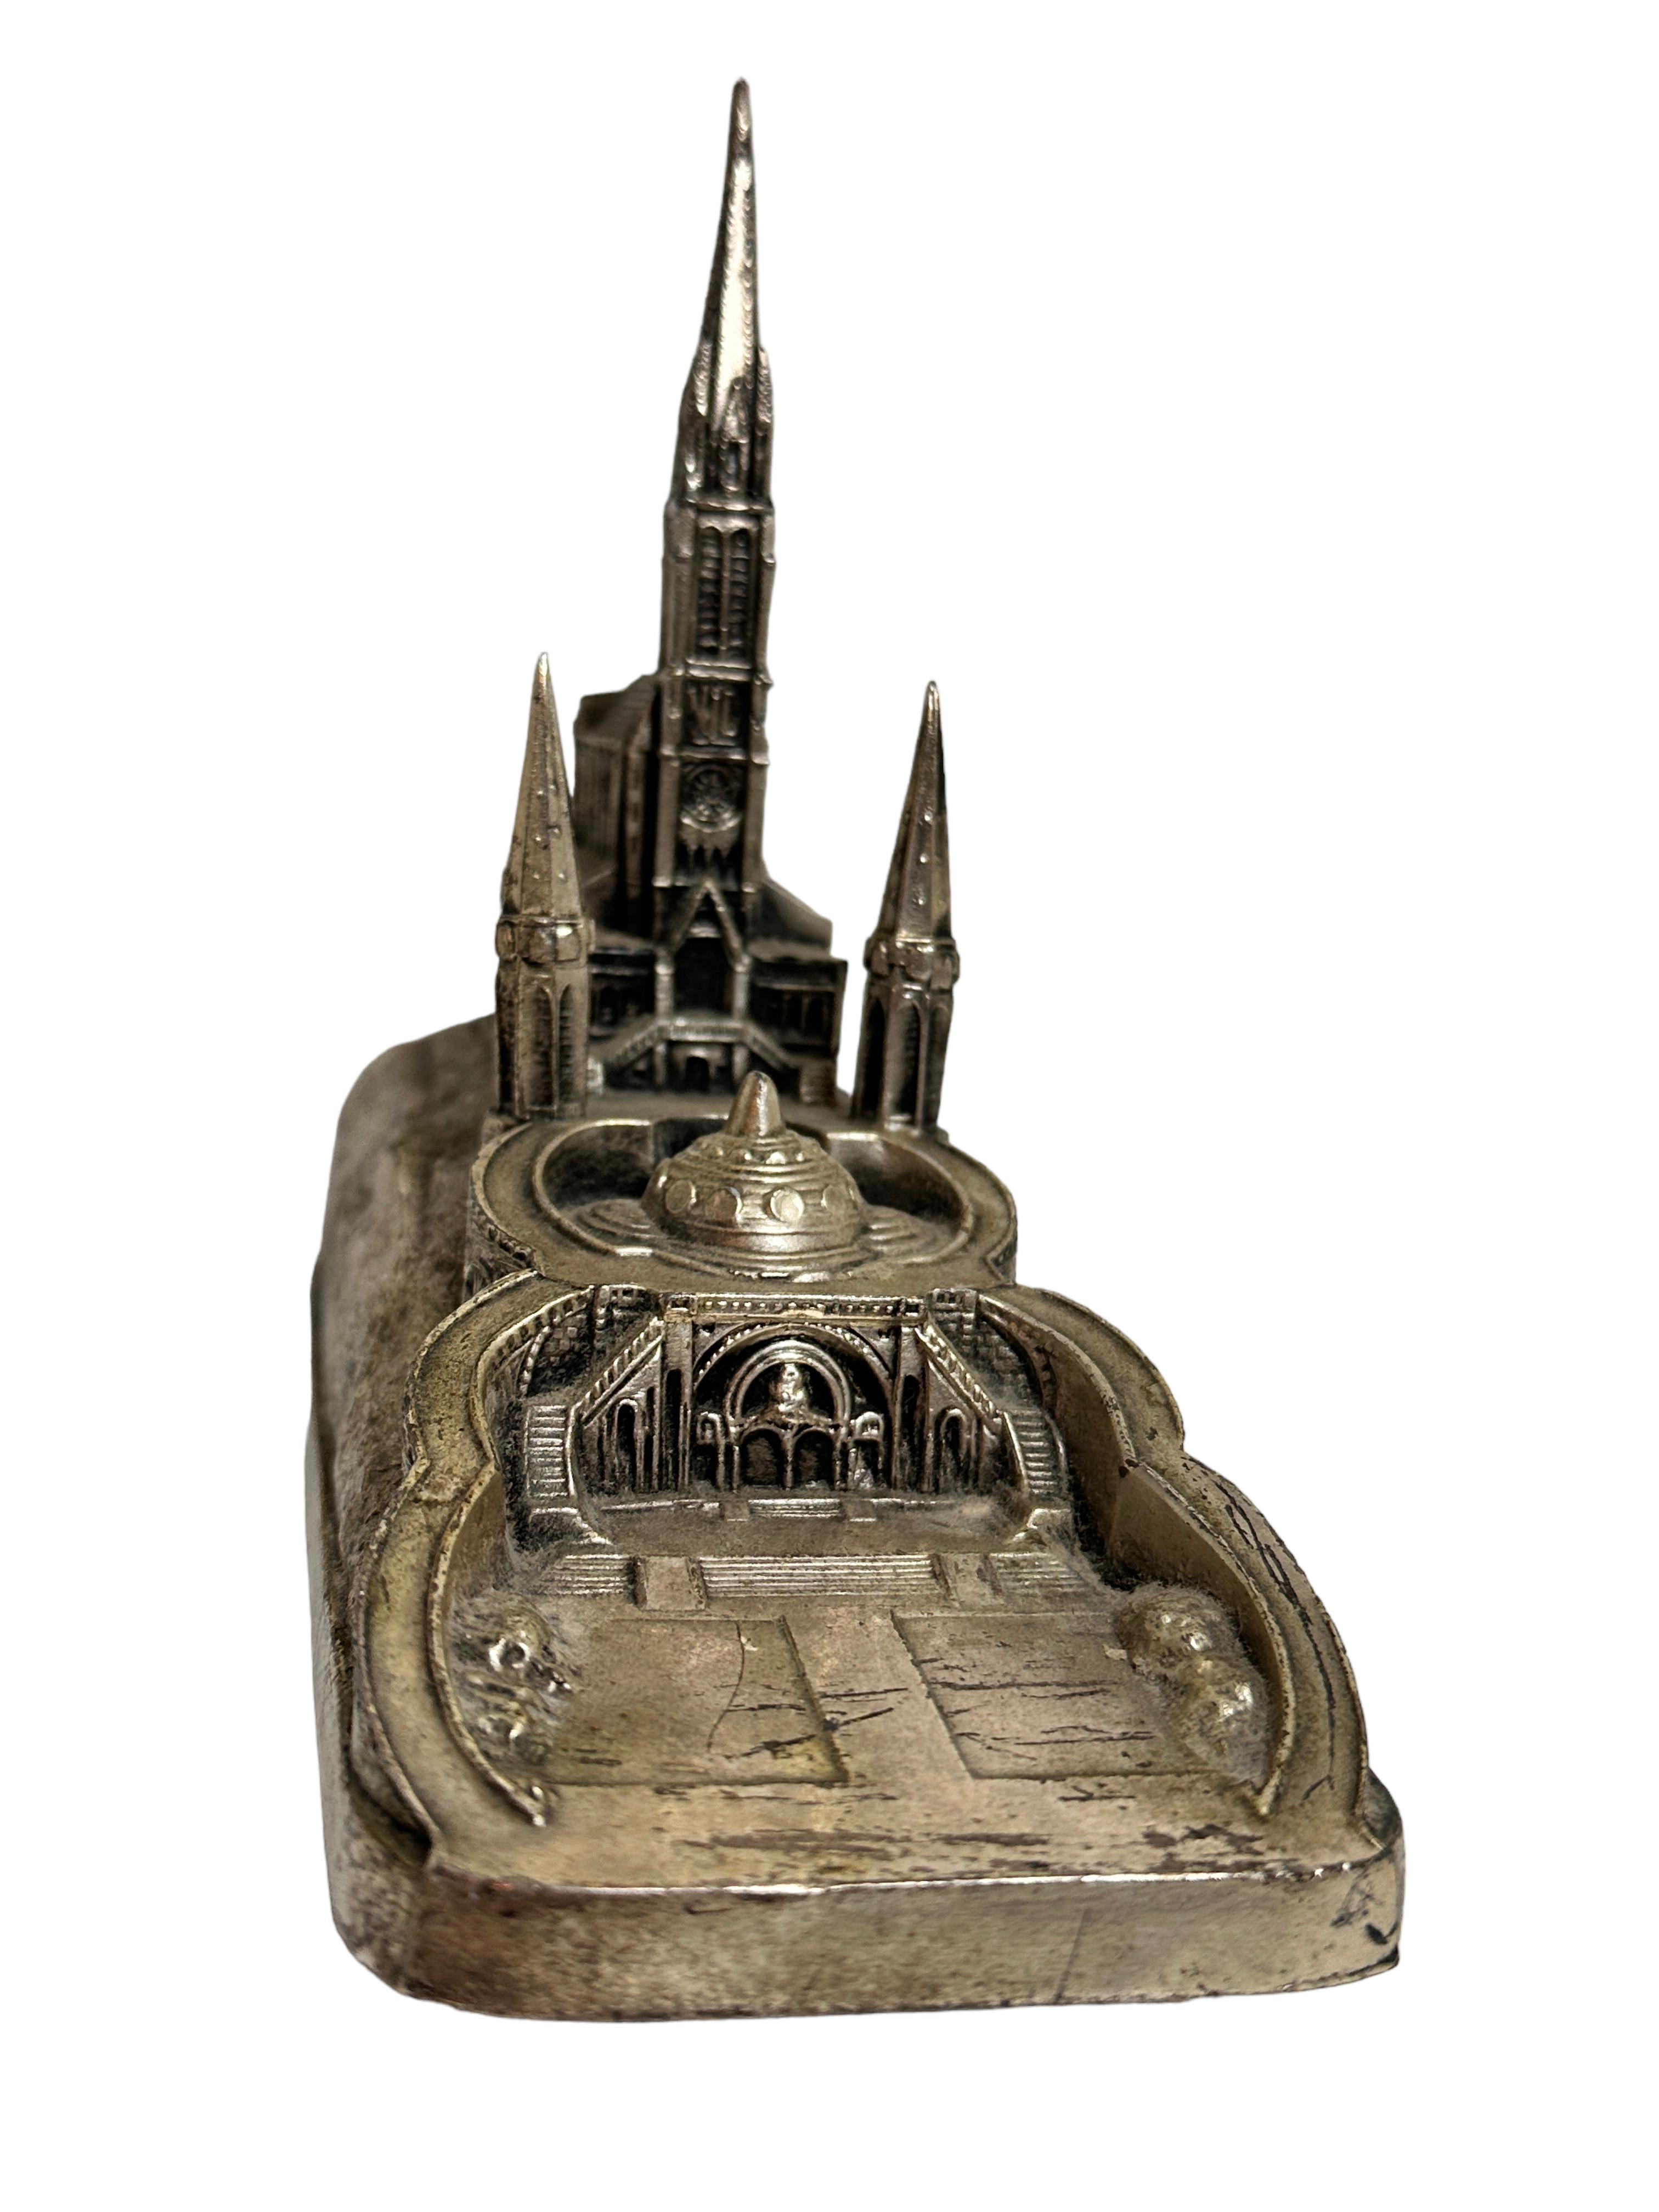 Diese alte versilberte Spieldose war ein Souvenir von einer Pilgerreise zur berühmten Stadt Lourdes in Frankreich. Er ist aus Metall und Holz gefertigt. Die Spieldose spielt eine schöne Melodie und ist in funktionstüchtigem Zustand. Eine schöne